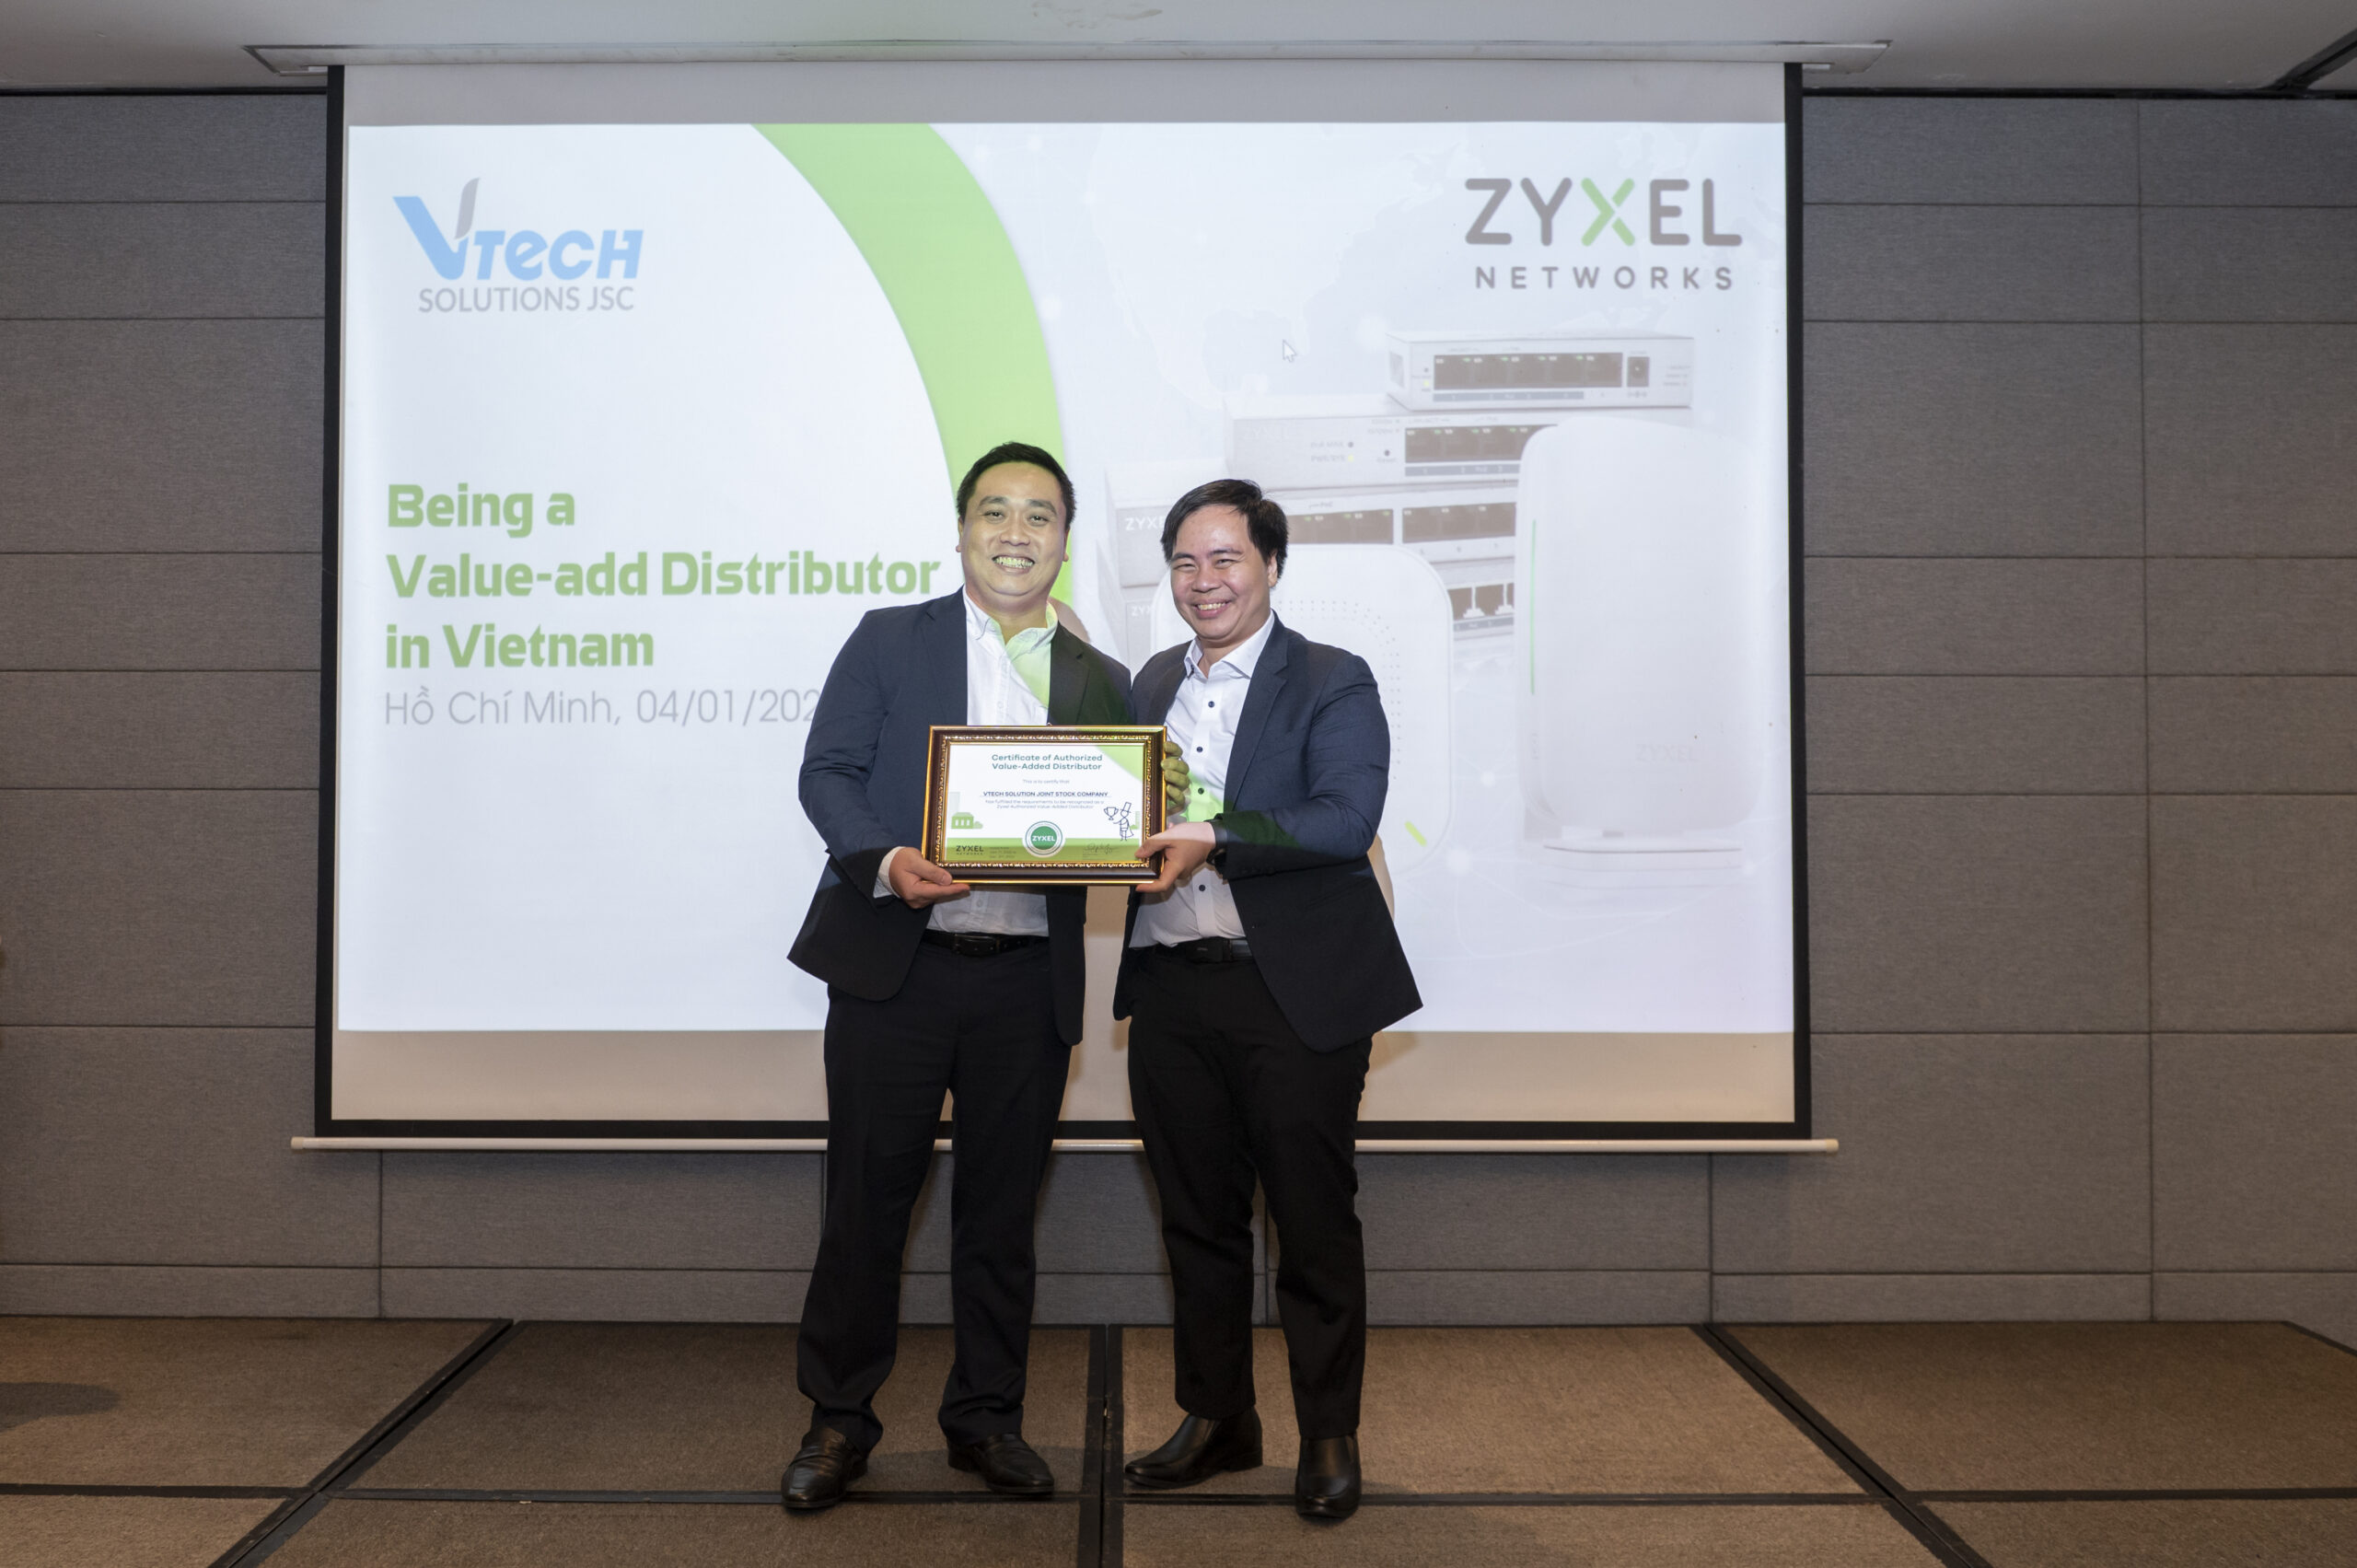 VTech trở thành nhà phân phối chính thức của ZYXEL